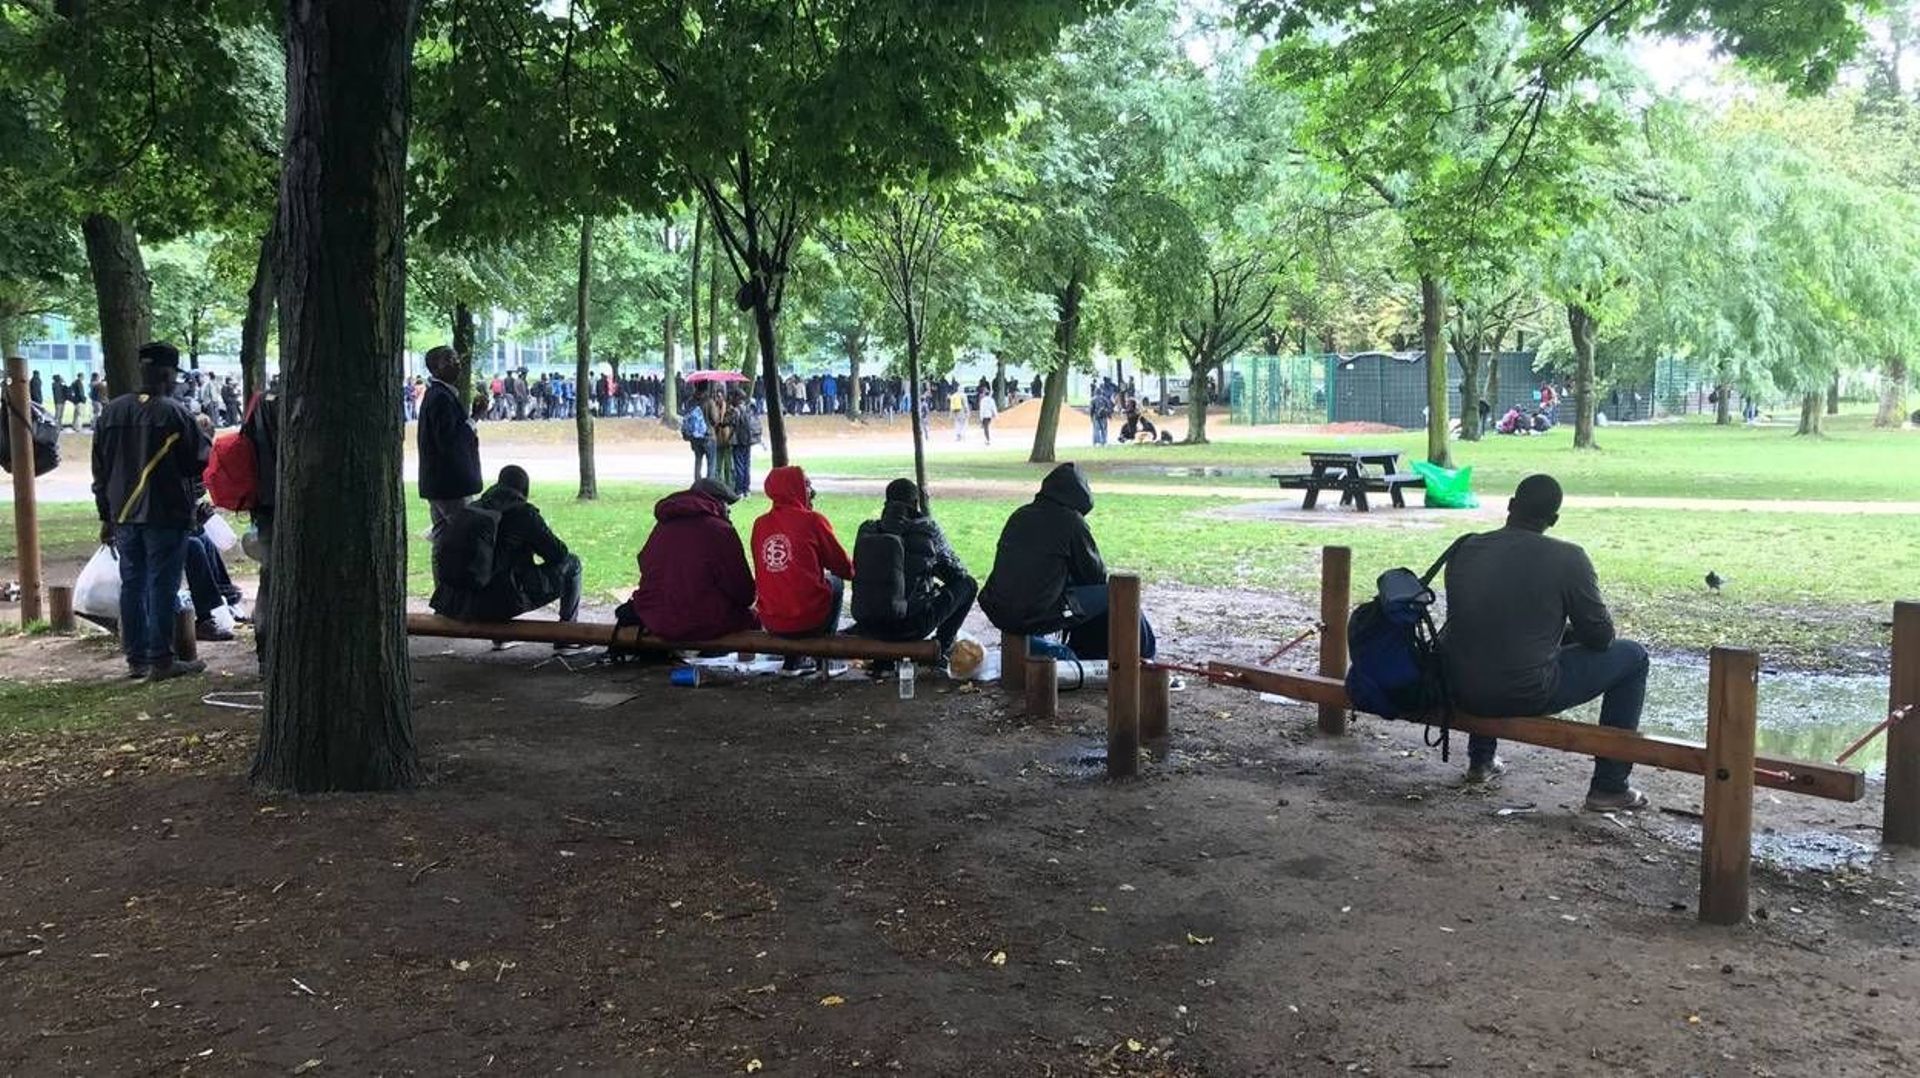 L'inspection sociale au parc Maximilien: "une nouvelle tentative d'intimidation"